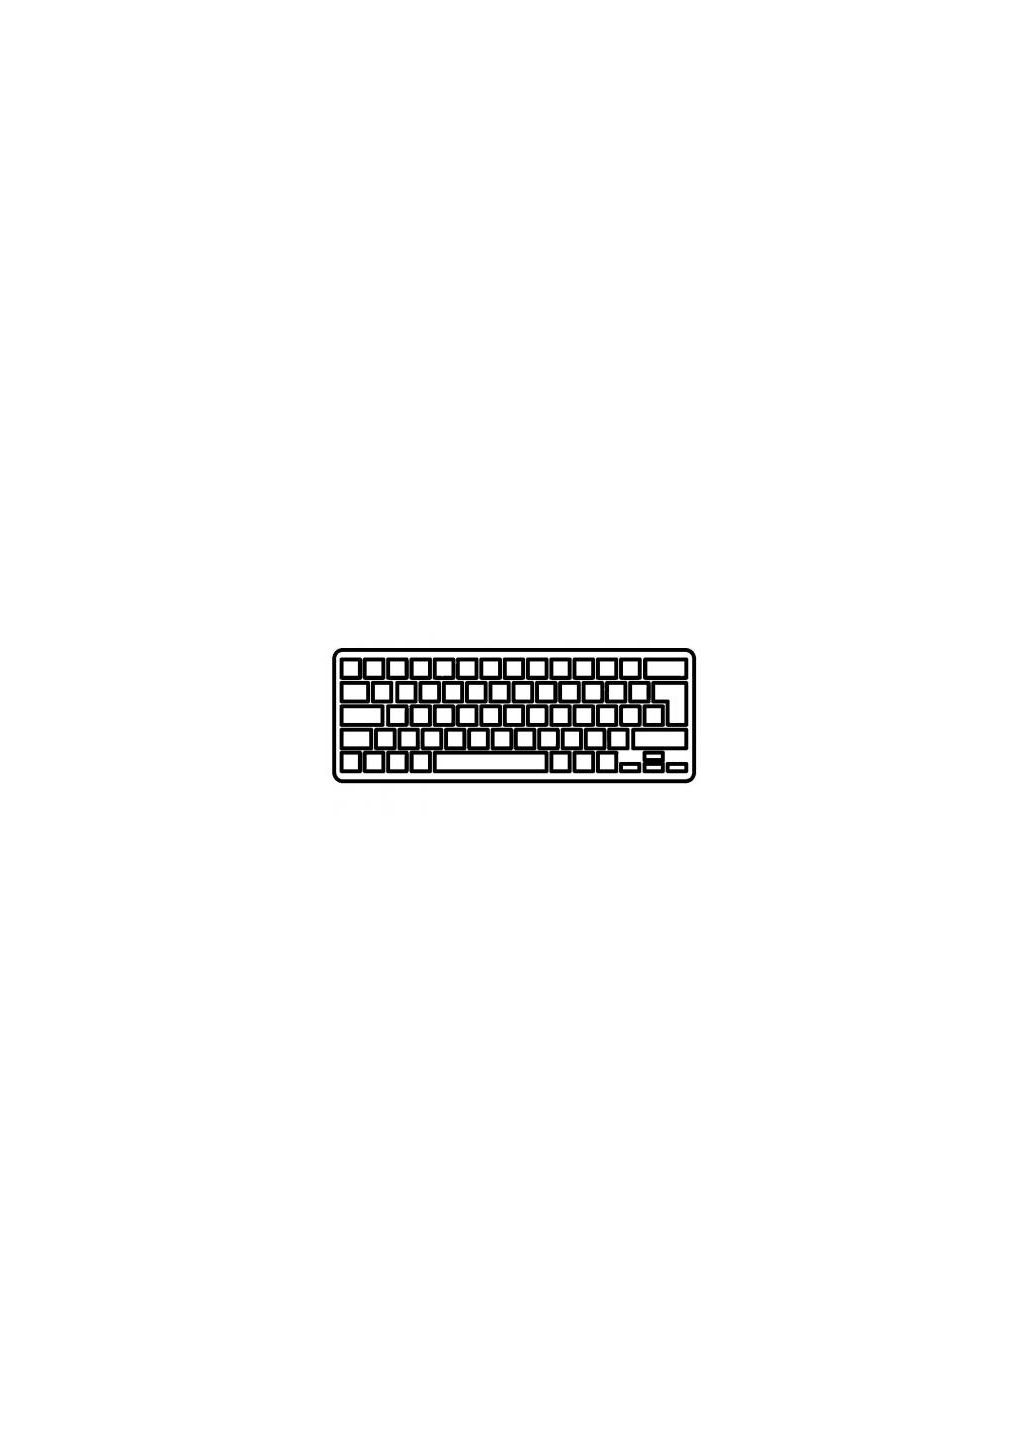 Клавиатура ноутбука (A43849) HP probook 430 g1 черная без рамки ua (276707677)